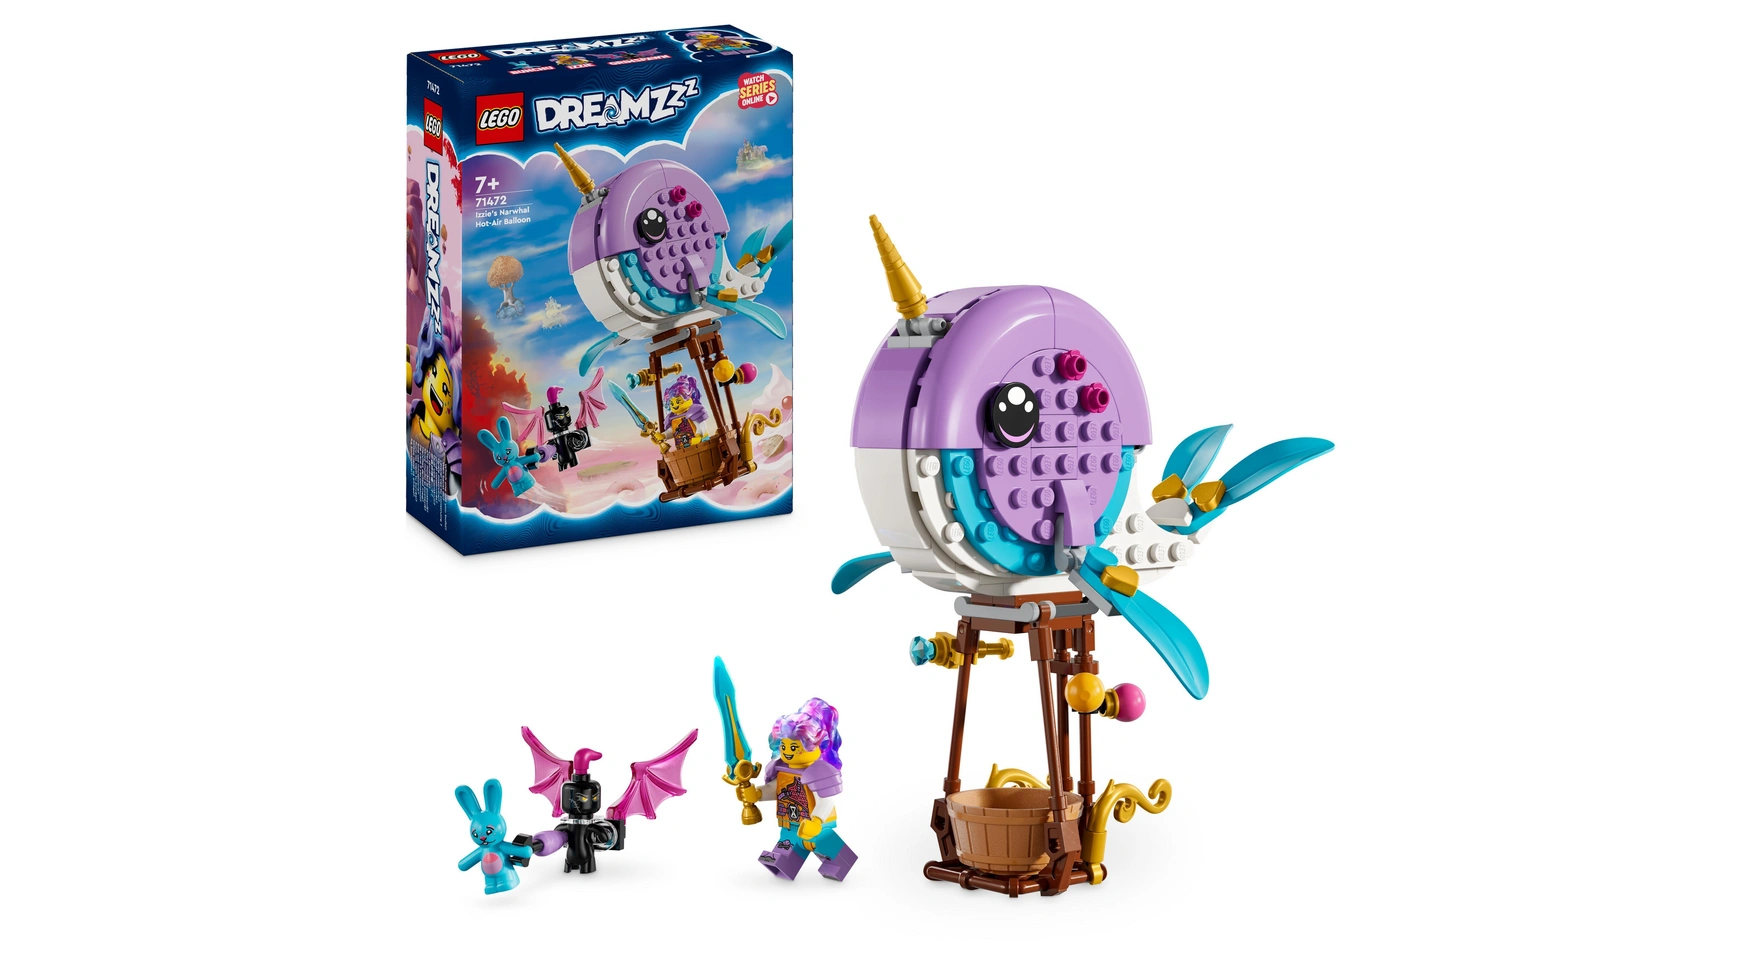 Lego DREAMZzz Игрушка на воздушном шаре Нарвал Иззи Sea Creatures lego dreamzzz матео и робот z blob персонаж игрушечного телевидения